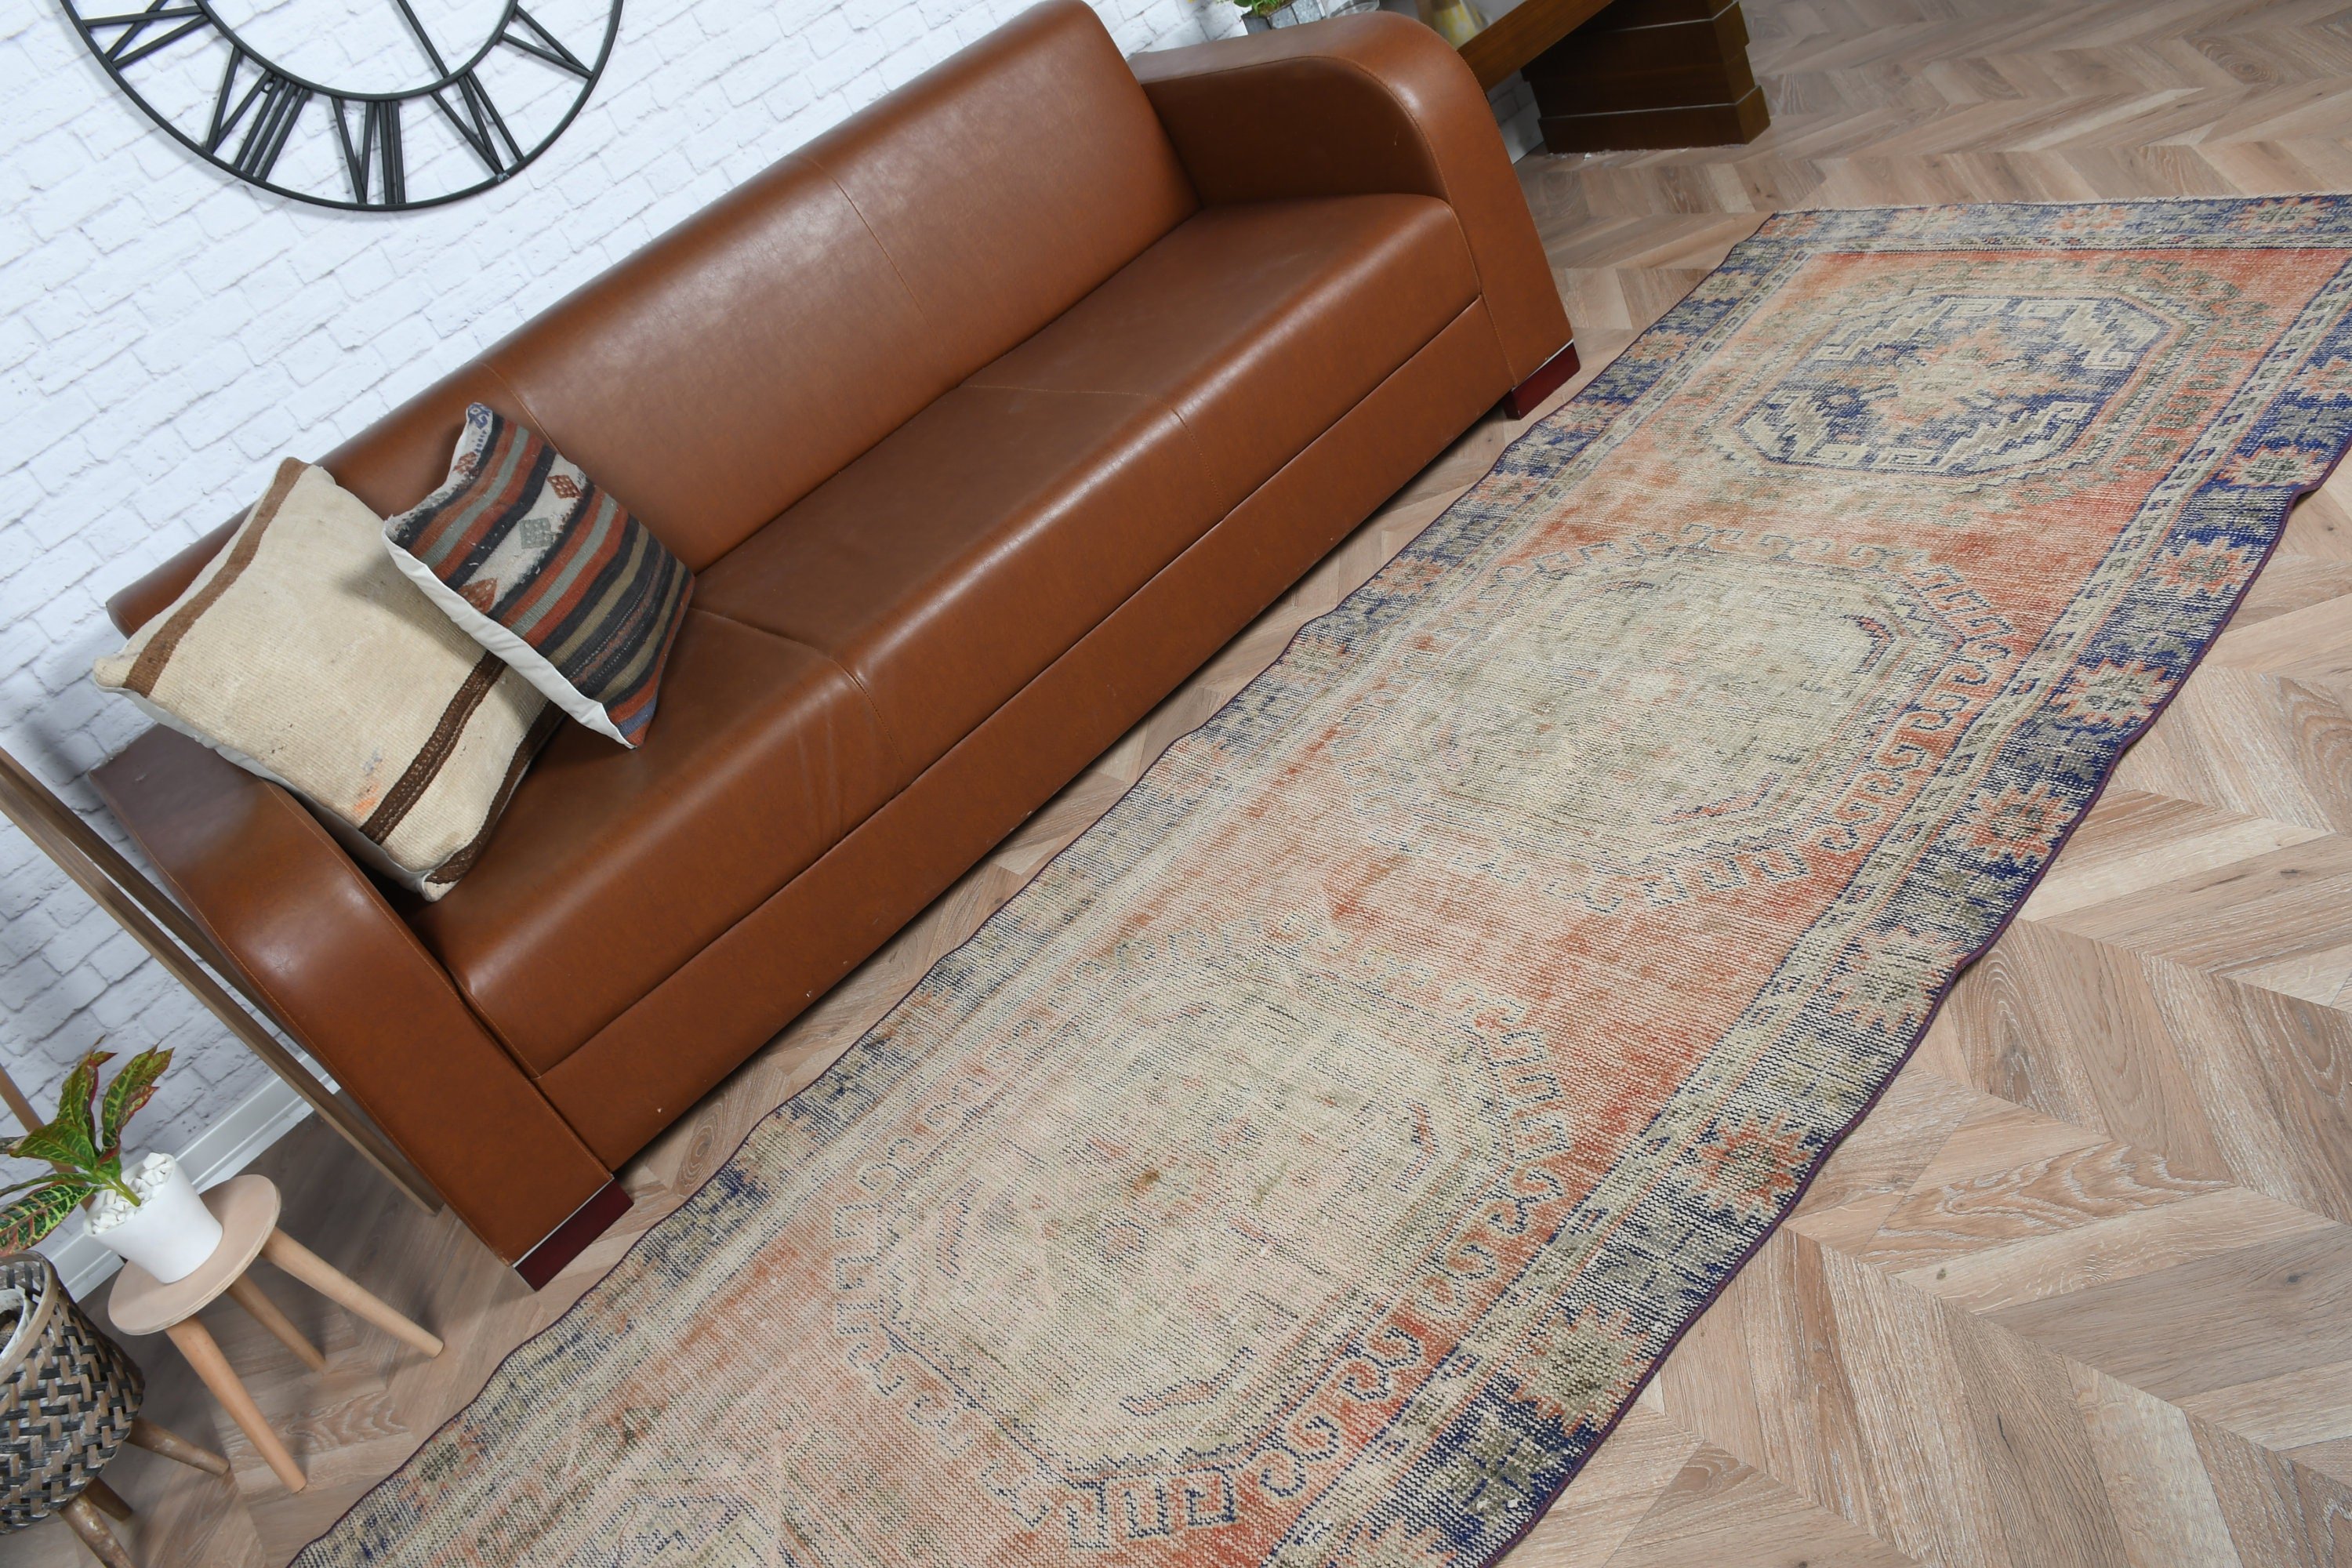 Turkish Rug, 3.5x10.7 ft Runner Rug, Vintage Rug, Orange Bedroom Rug, Rugs for Hallway, Home Decor Rugs, Kitchen Rug